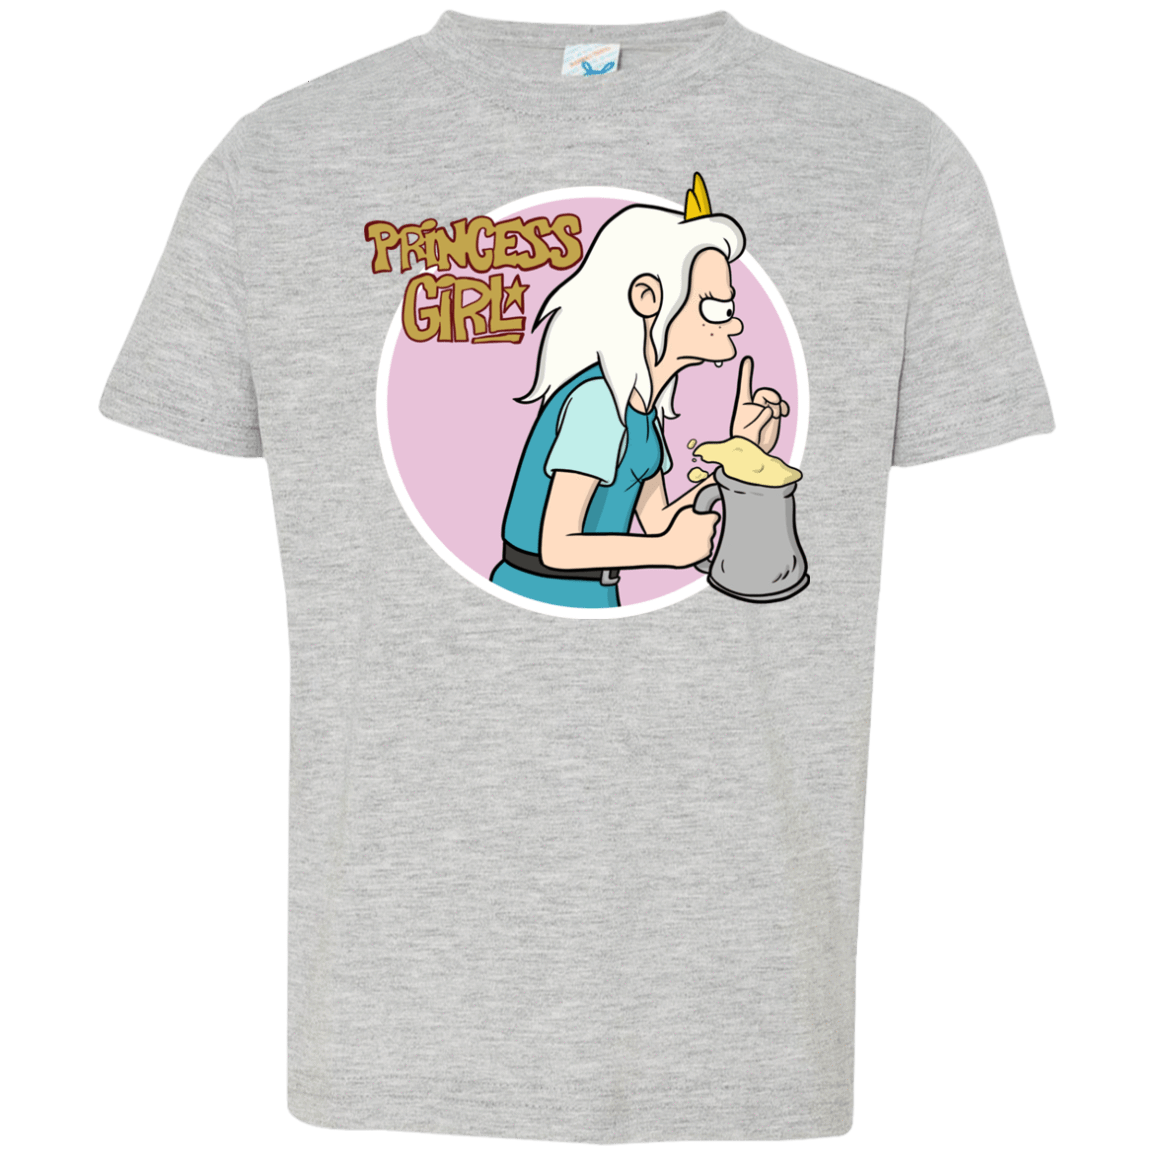 T-Shirts Heather Grey / 2T Princess Girl Toddler Premium T-Shirt